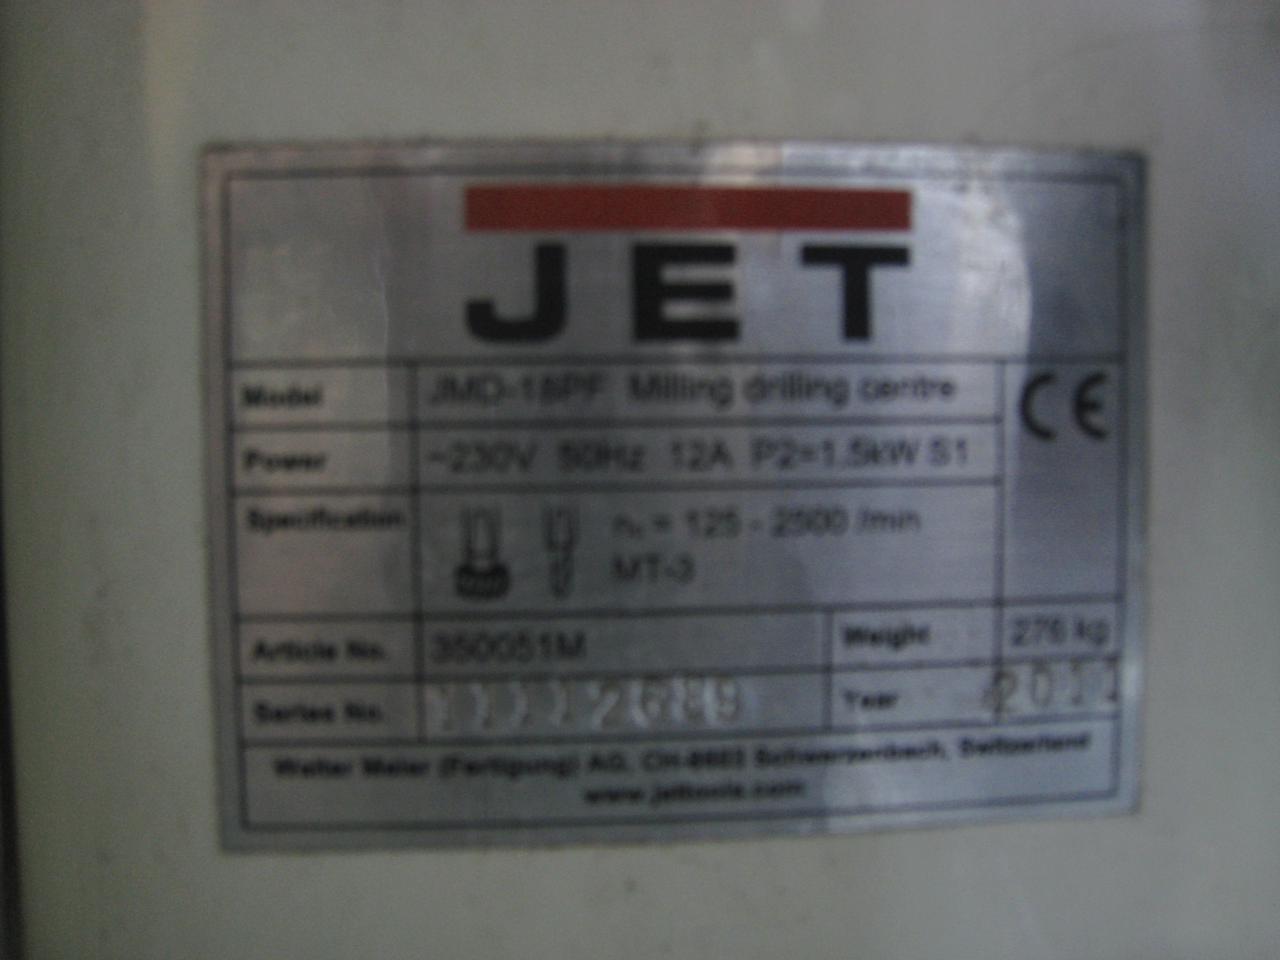 JET JMD-18PF Фрезерно-сверлильный станок, 230В. (Б/У оборудование)